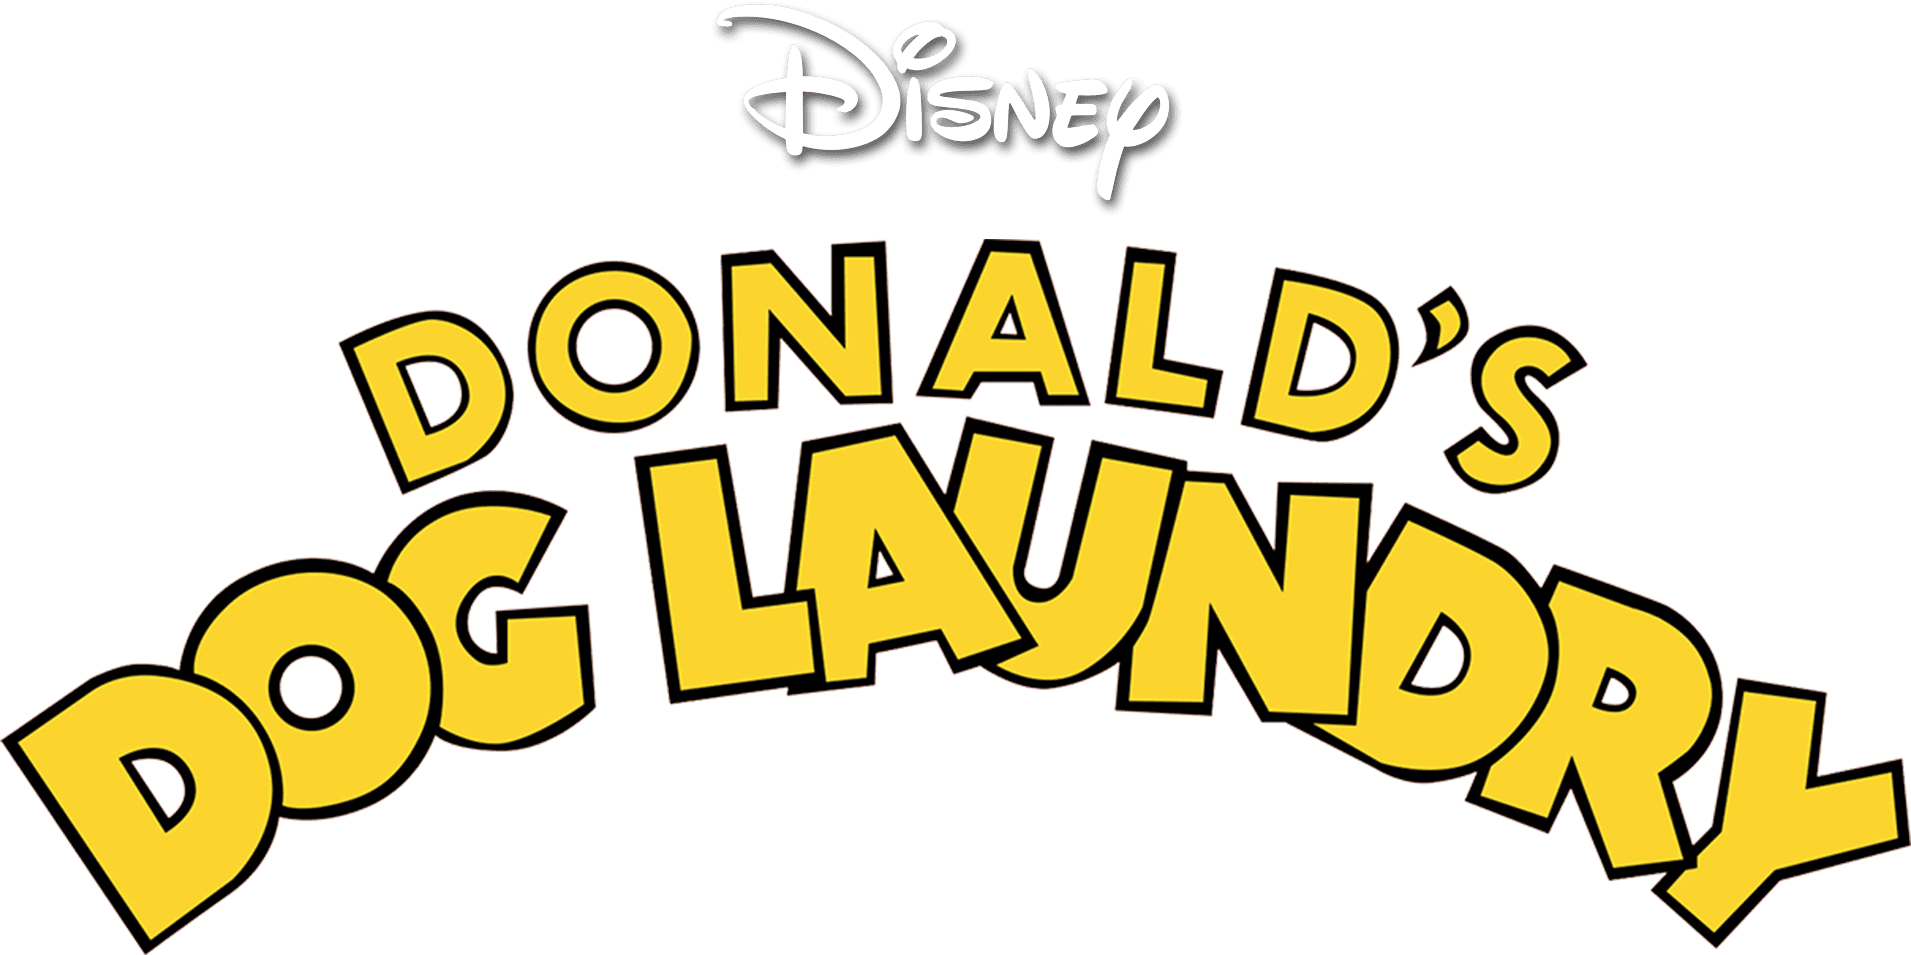 Donald's Dog Laundry logo